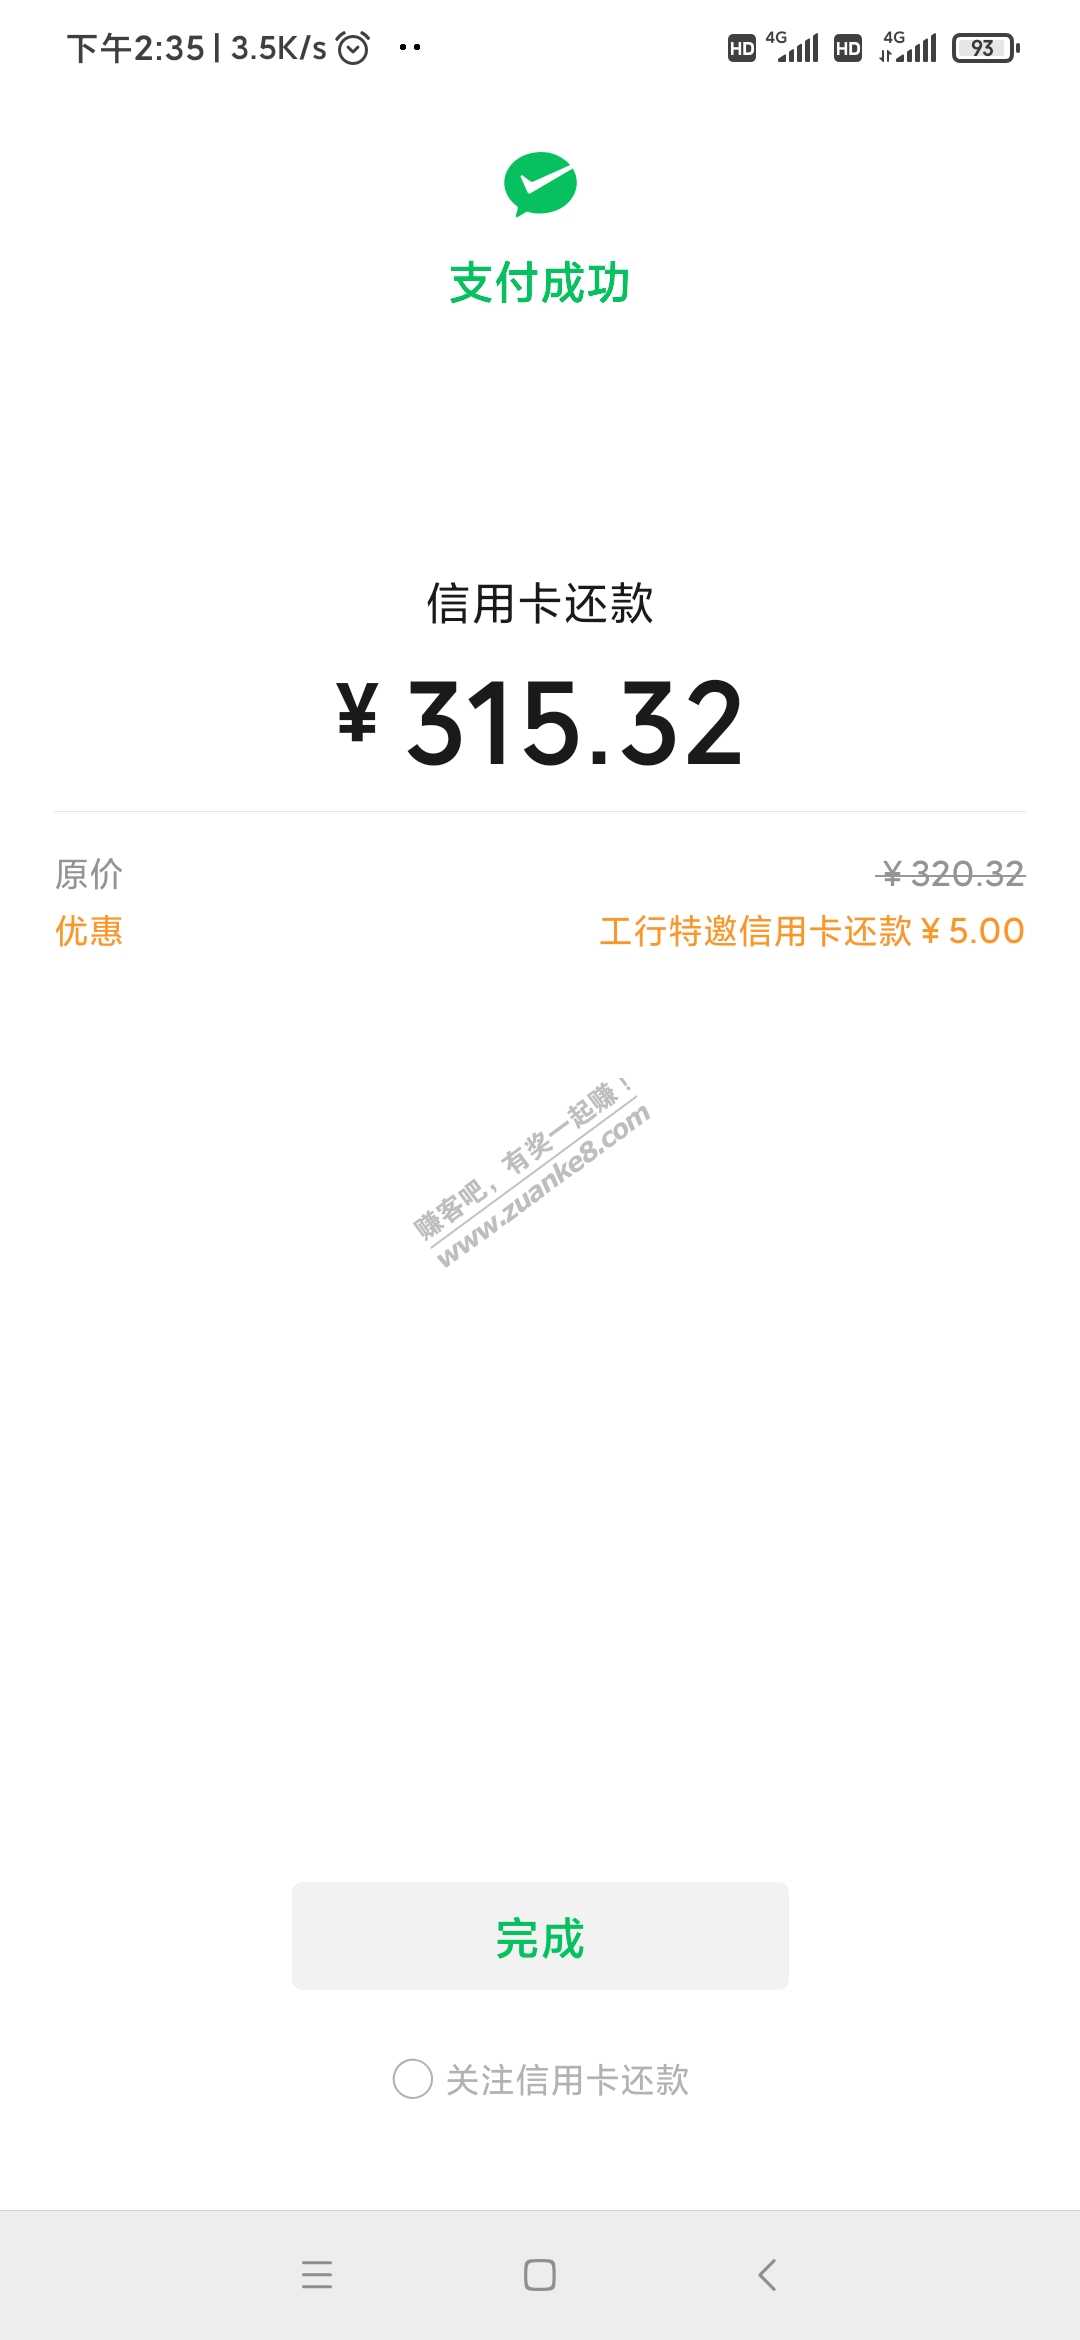 V.xxing/用卡还款工商银行支付200-5-惠小助(52huixz.com)